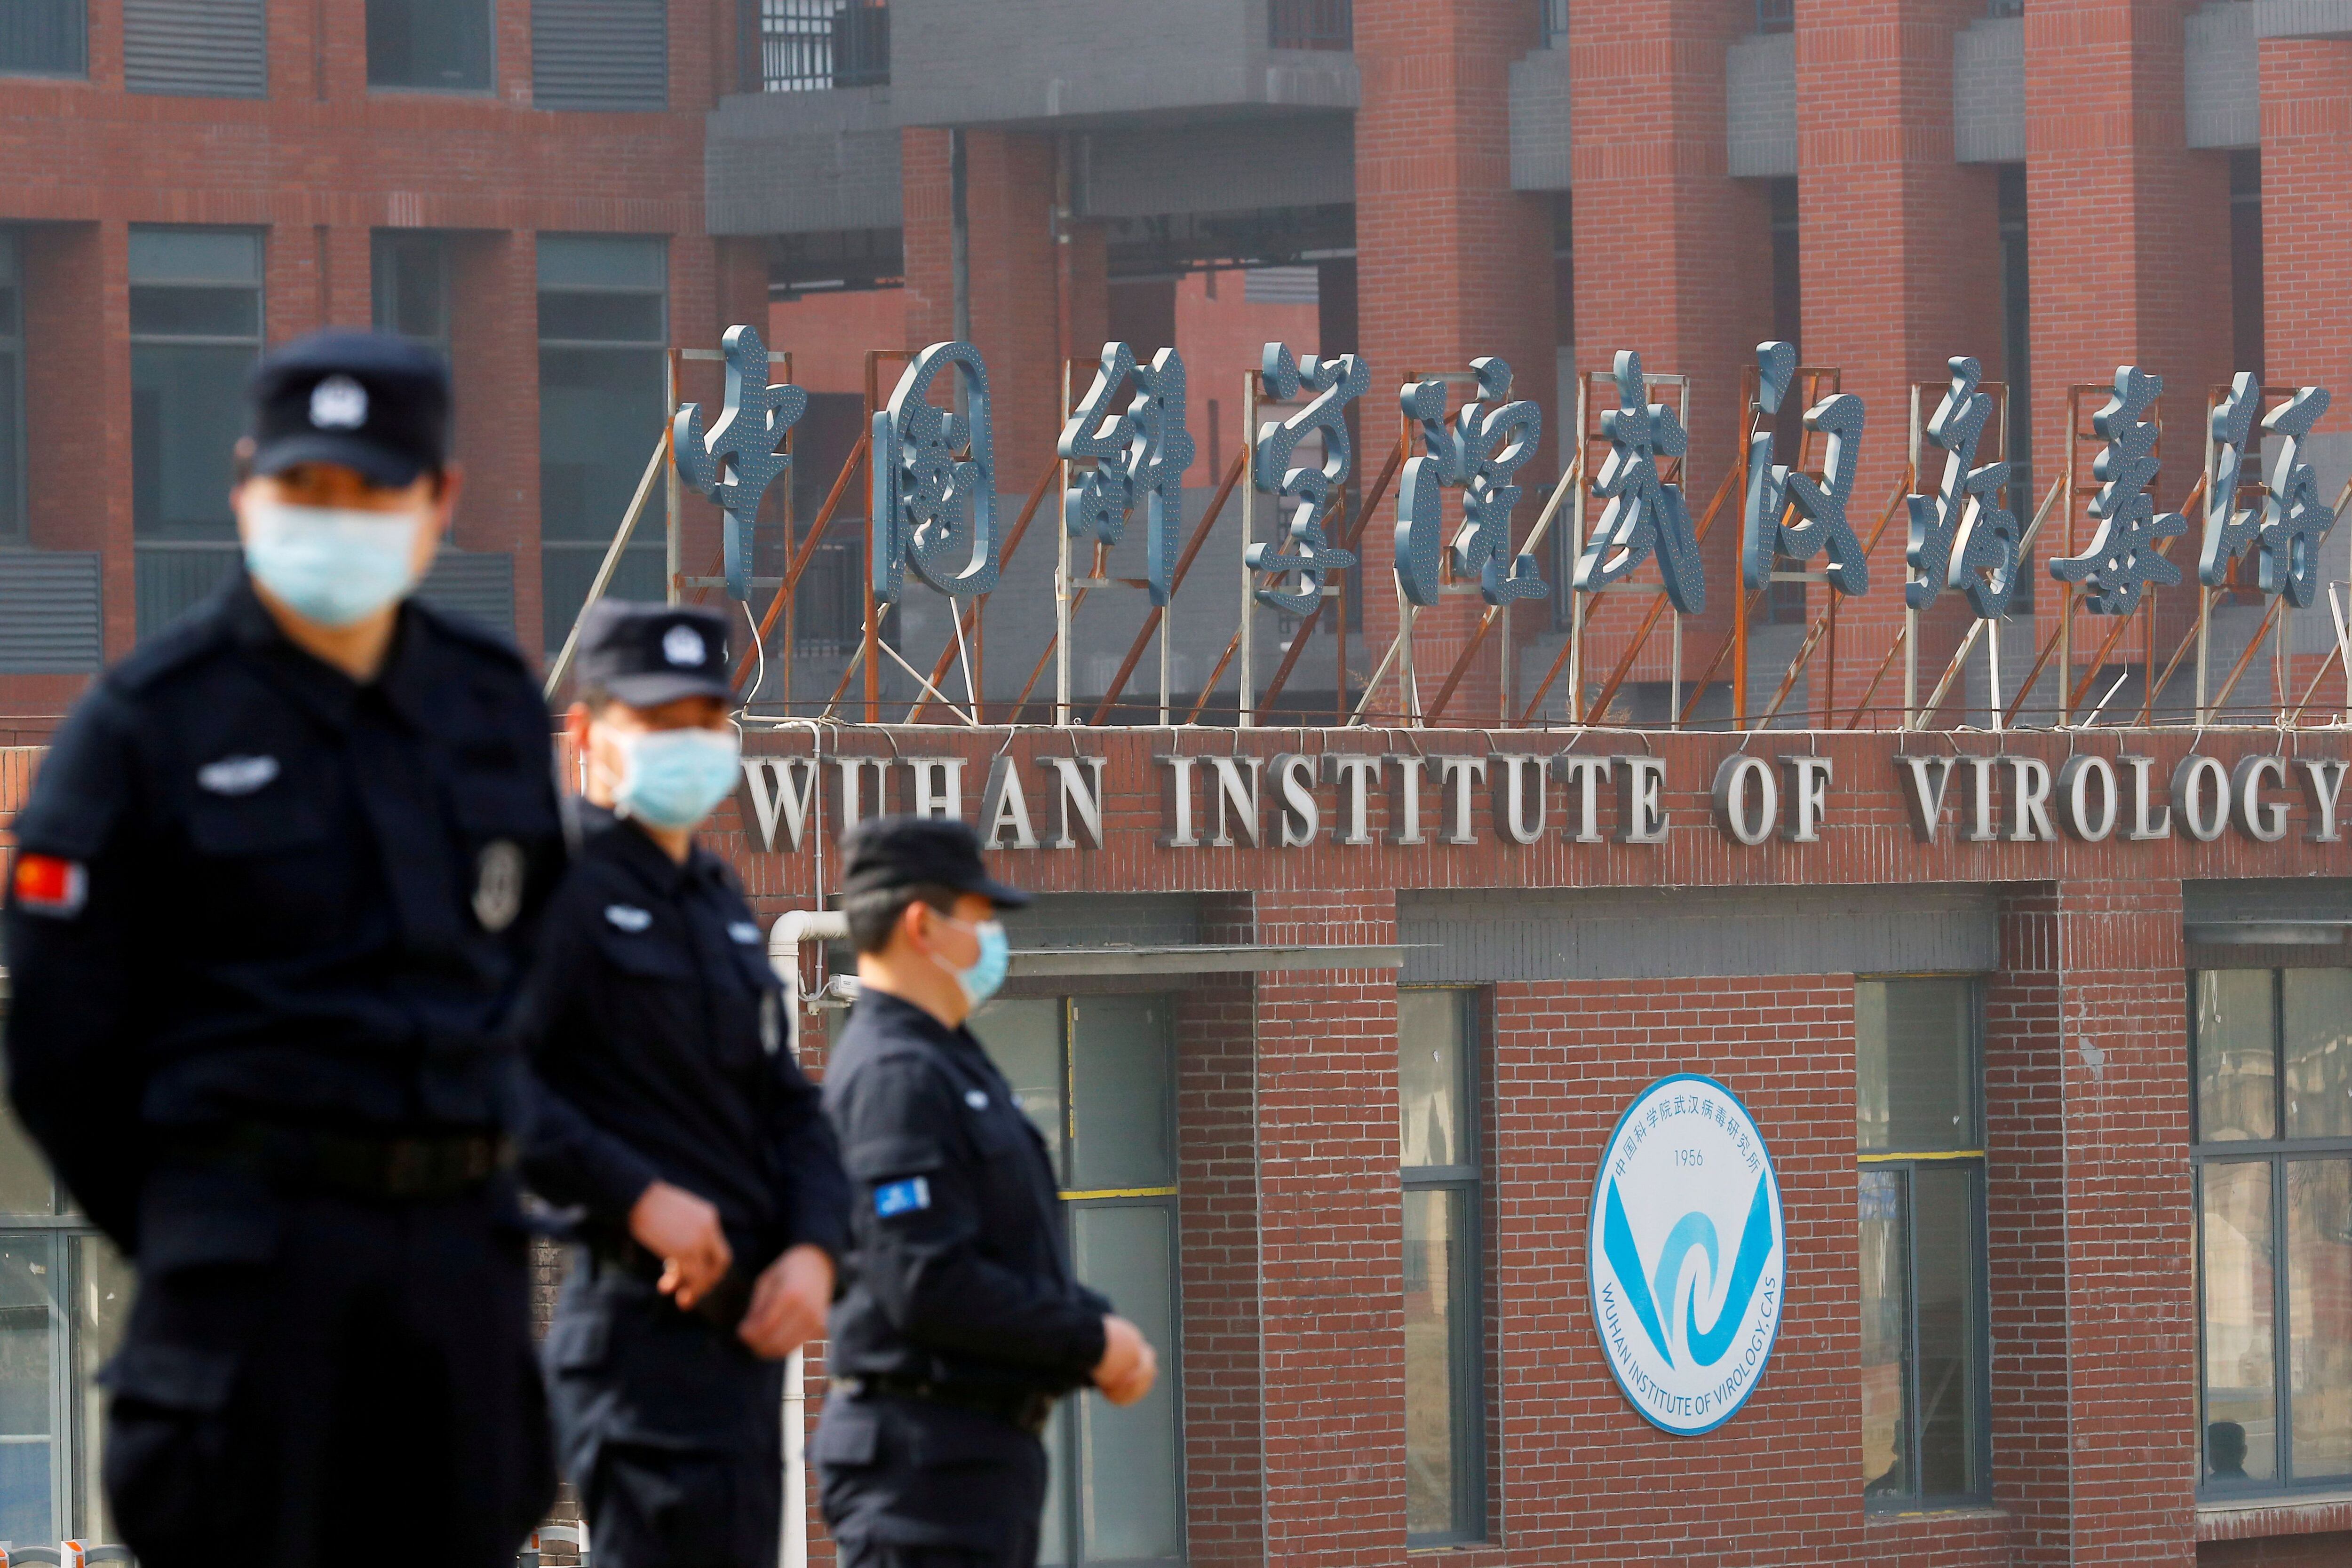 FOTO DE ARCHIVO: Personal de seguridad vigila el exterior del Instituto de Virología de Wuhan (Reuters)